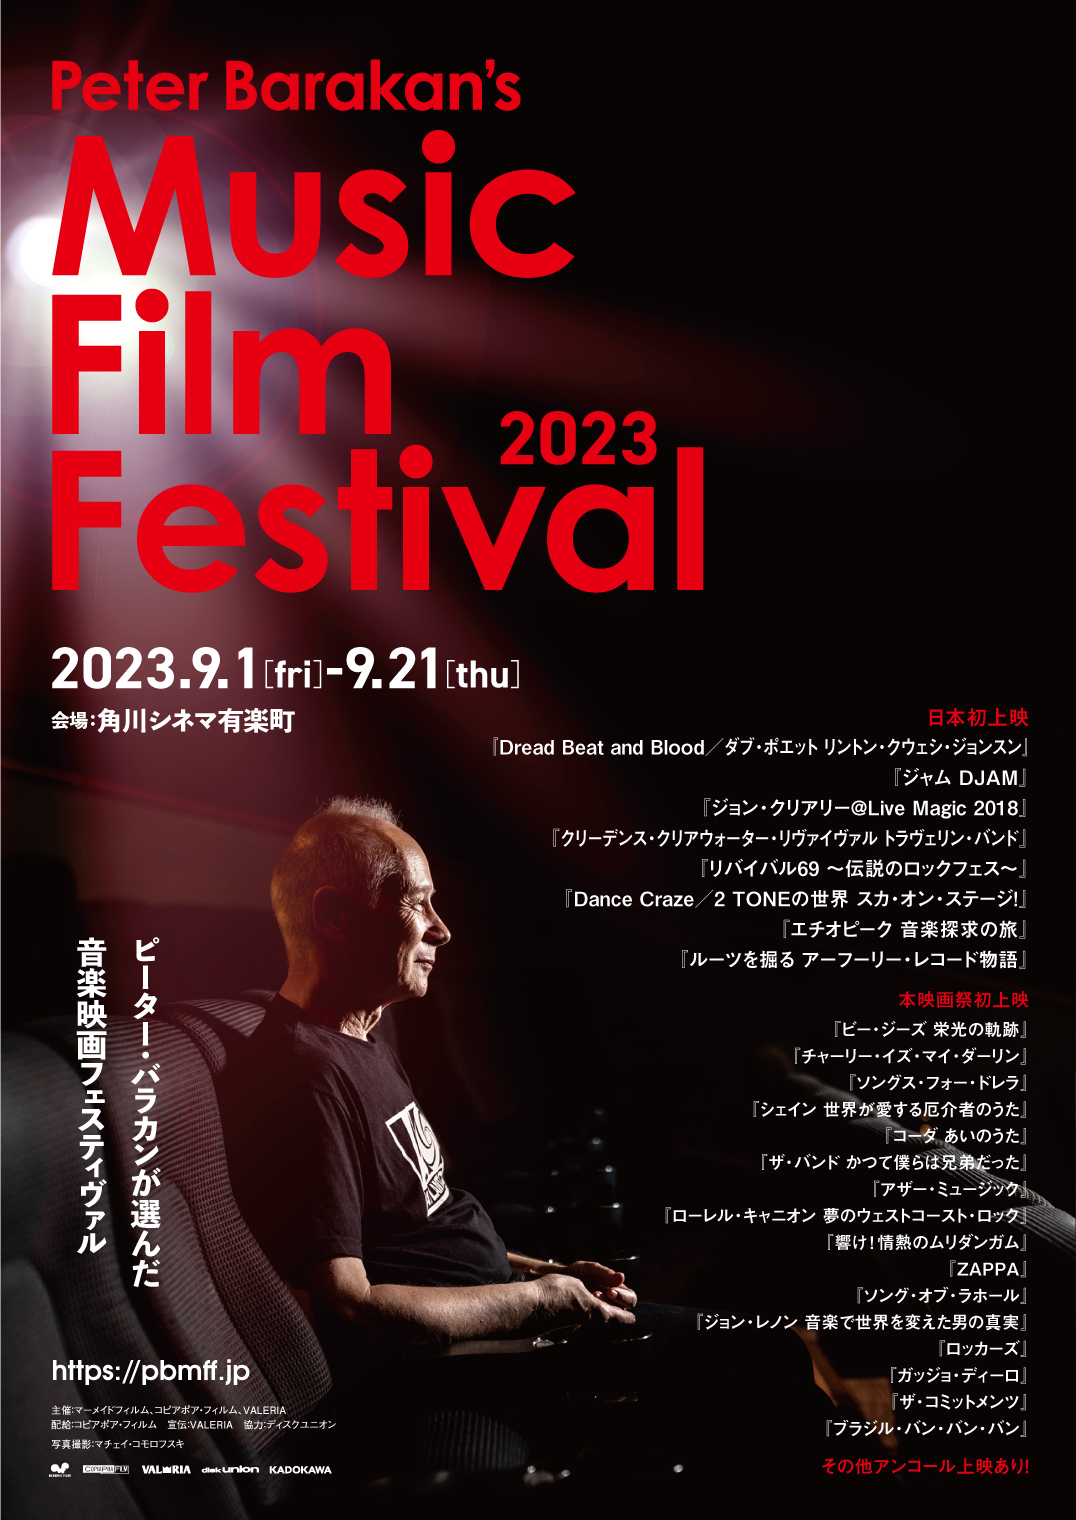 「Peter Barakan's Music Film Festival 2023」9月1日から開催 日本初上映作など31作、21回のトークイベント決定